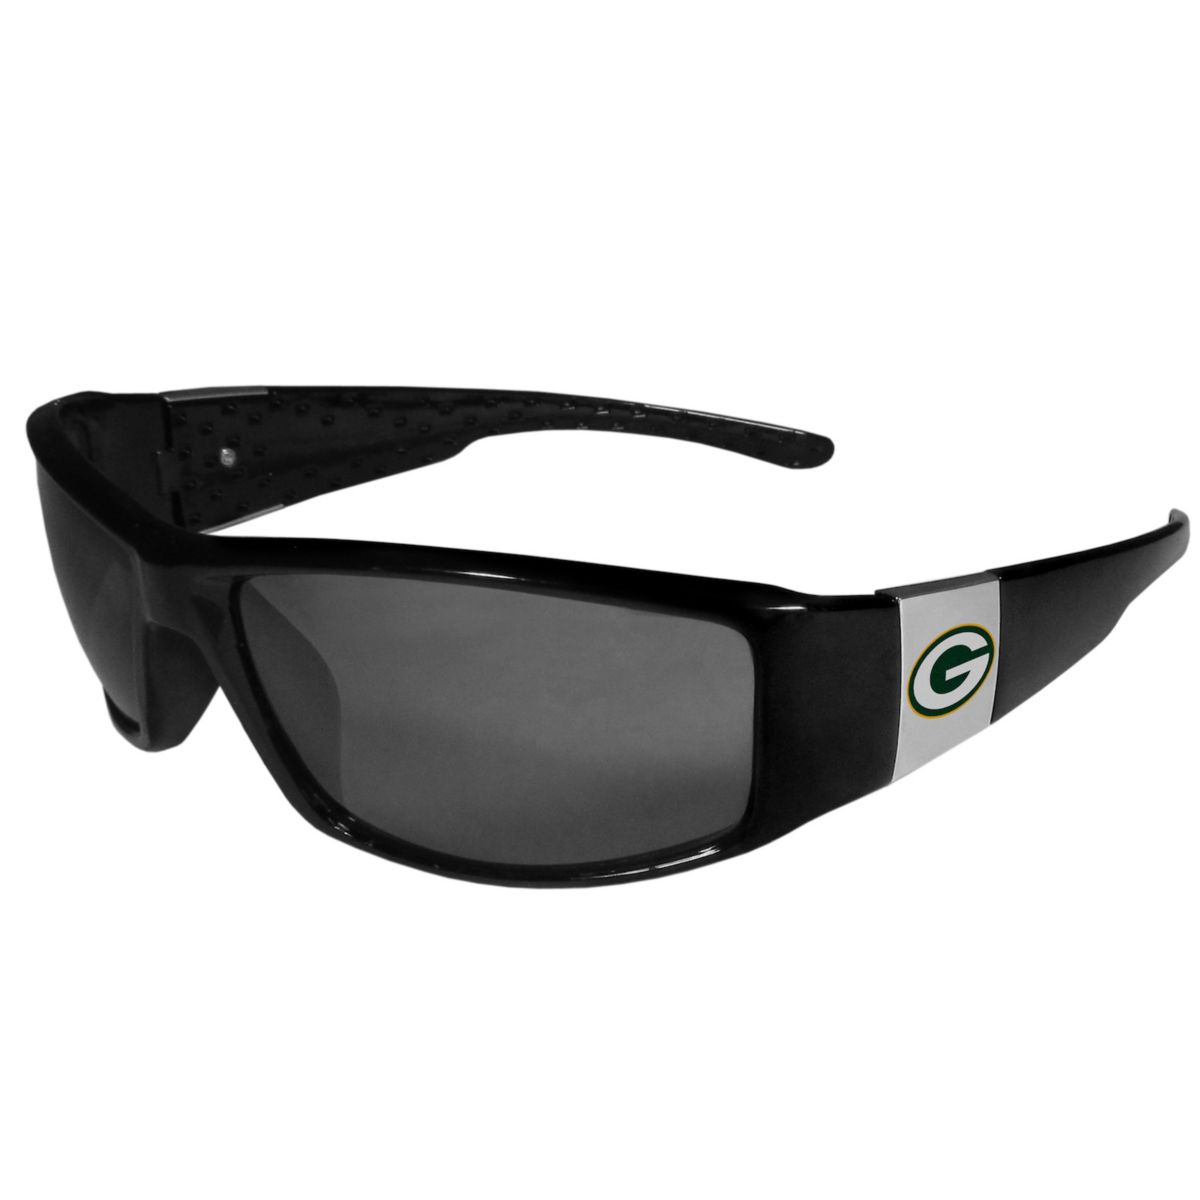 Мужские солнцезащитные очки Green Bay Packers в хромированной оправе Unbranded